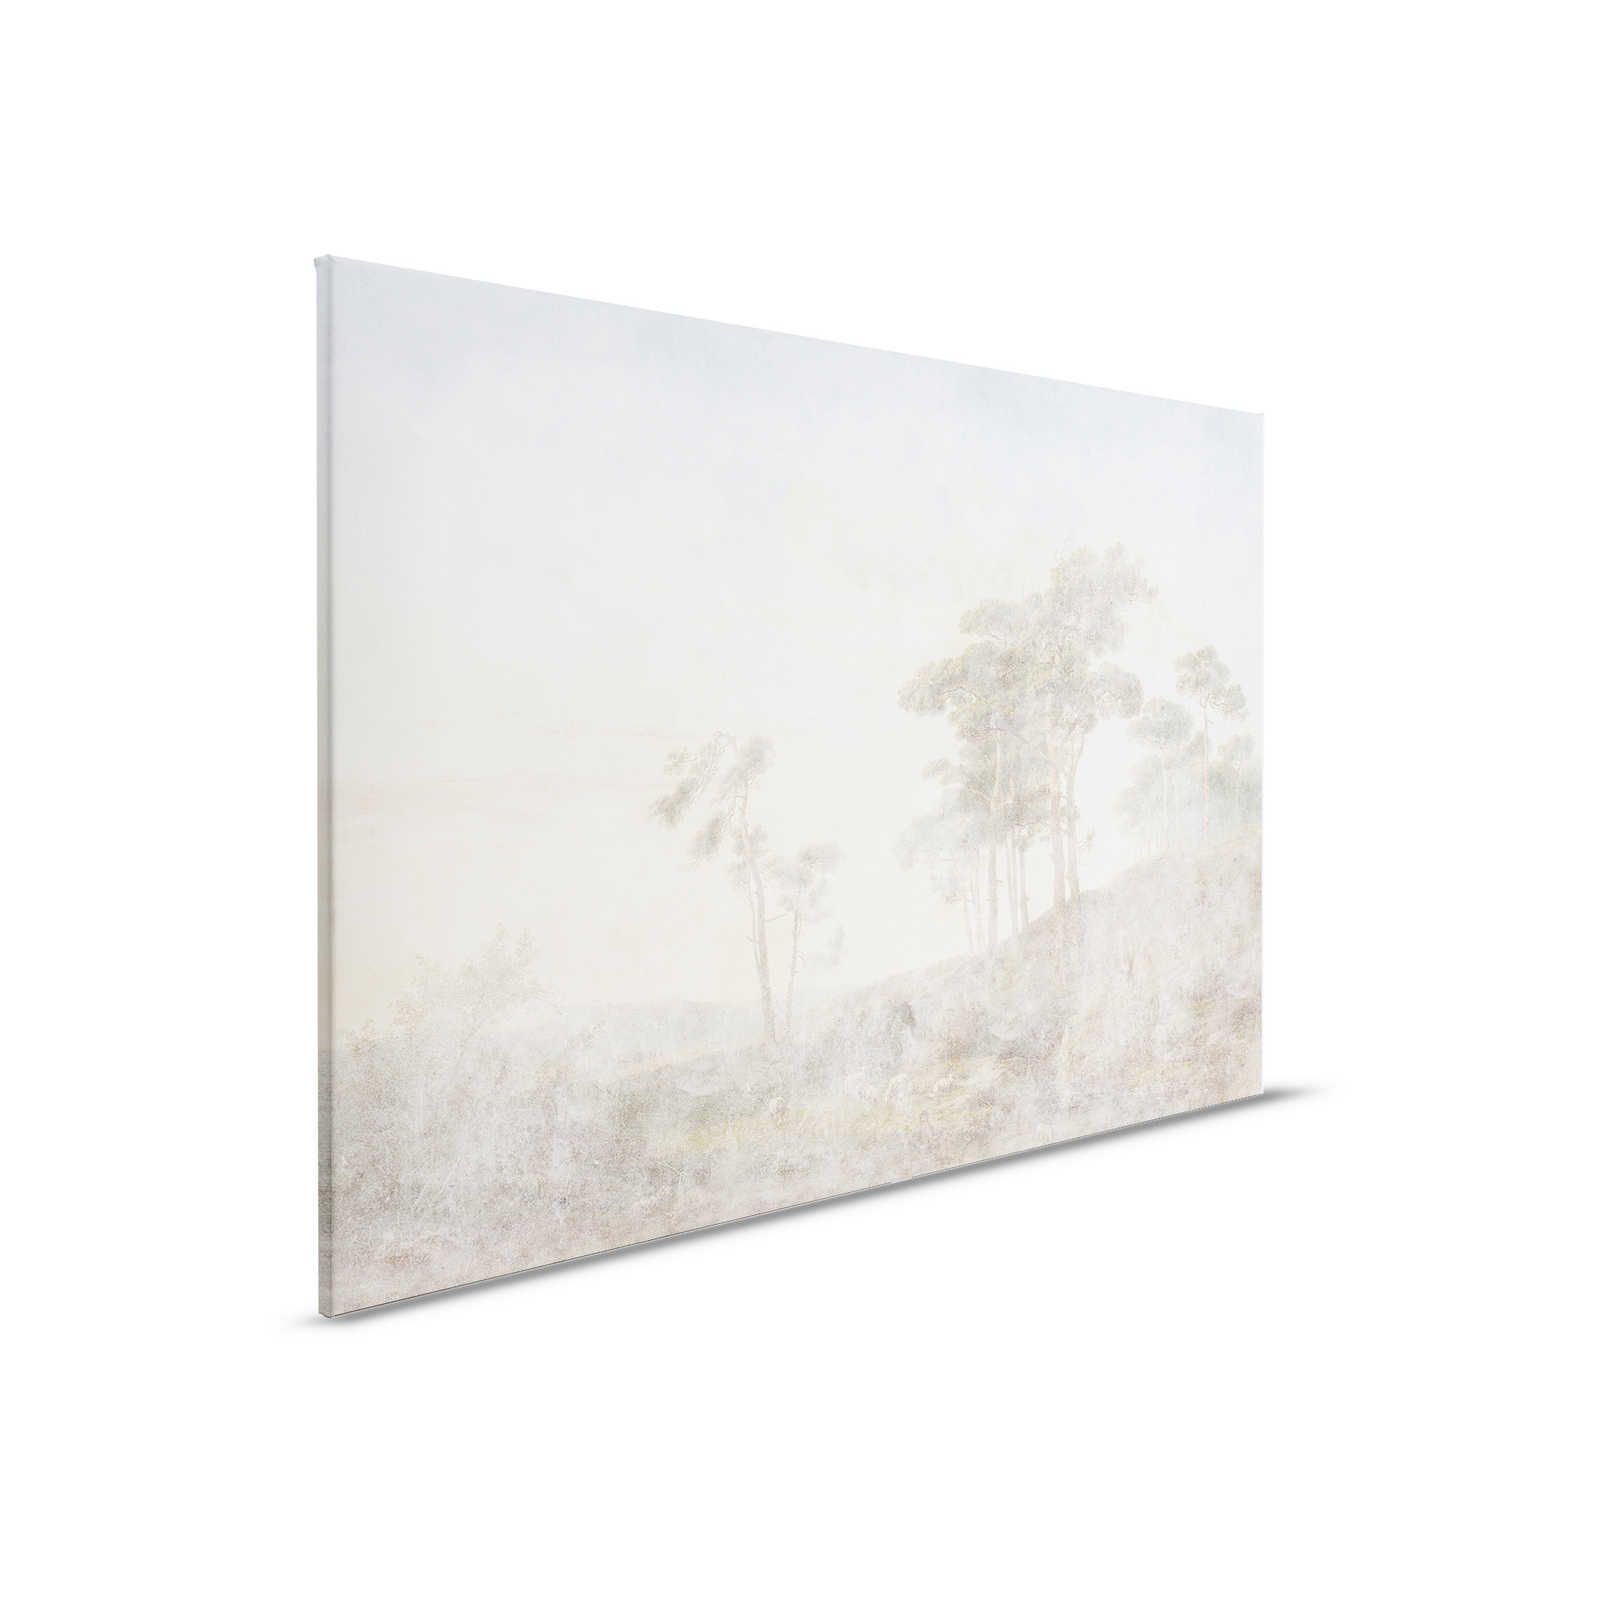 Romantic Grove 1 - Peinture sur toile aspect usé délavé - 0,90 m x 0,60 m
